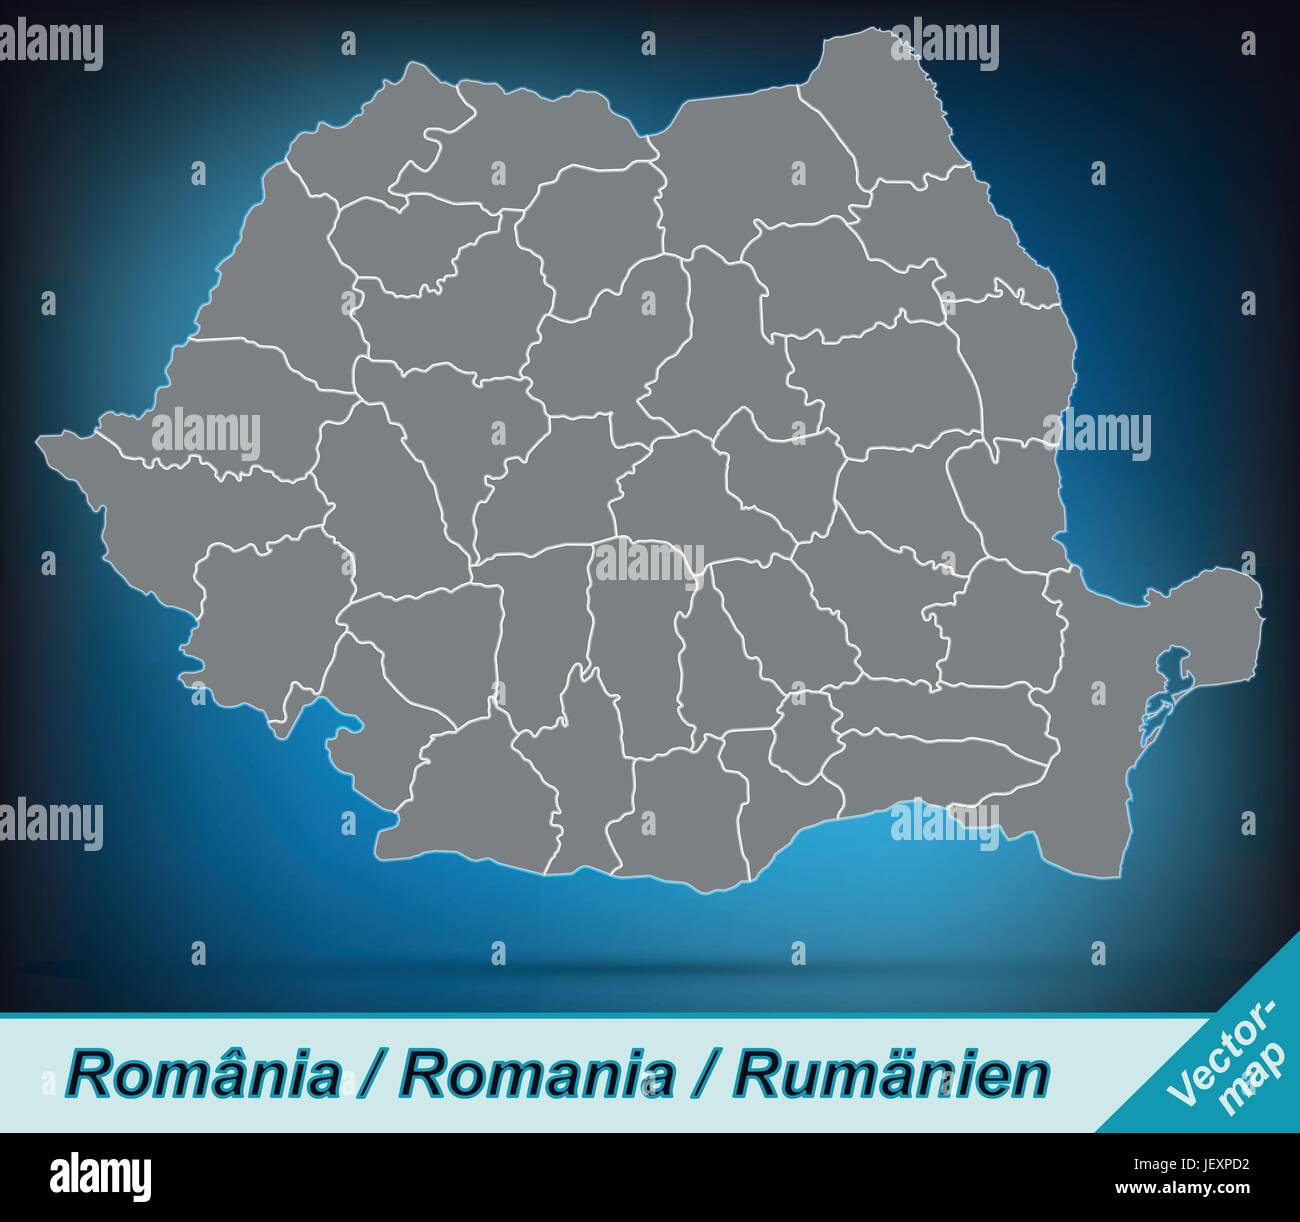 Carte des frontières de la Roumanie avec des bordures en gris clair Illustration de Vecteur